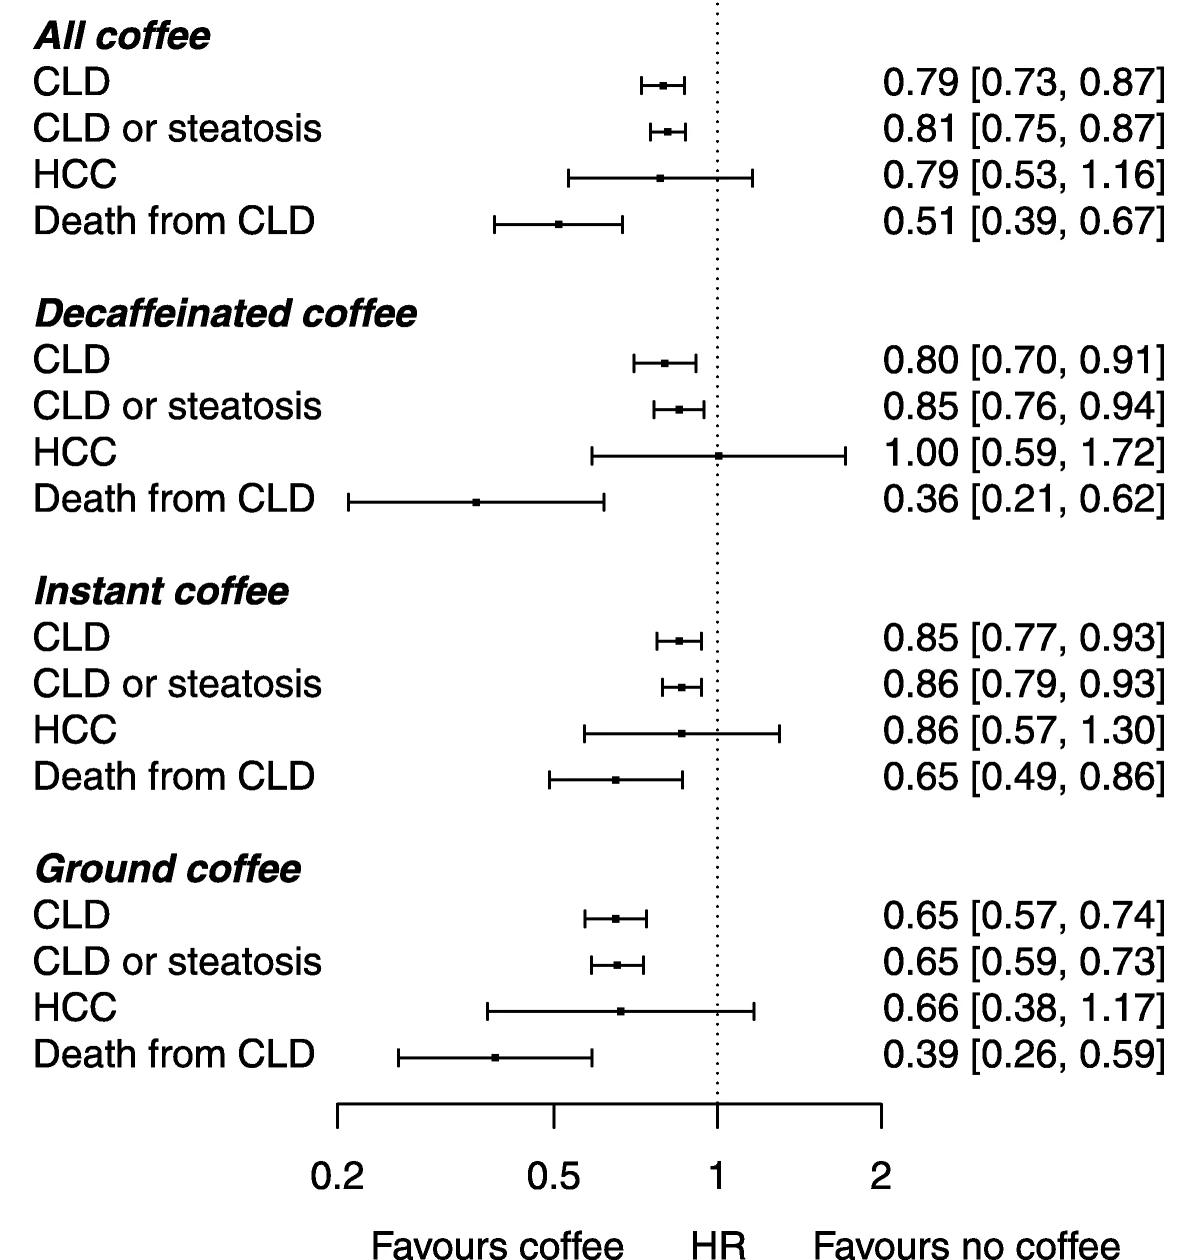 Способ приготовления кофе не повлиял на связь со снижением риска заболеваний печени